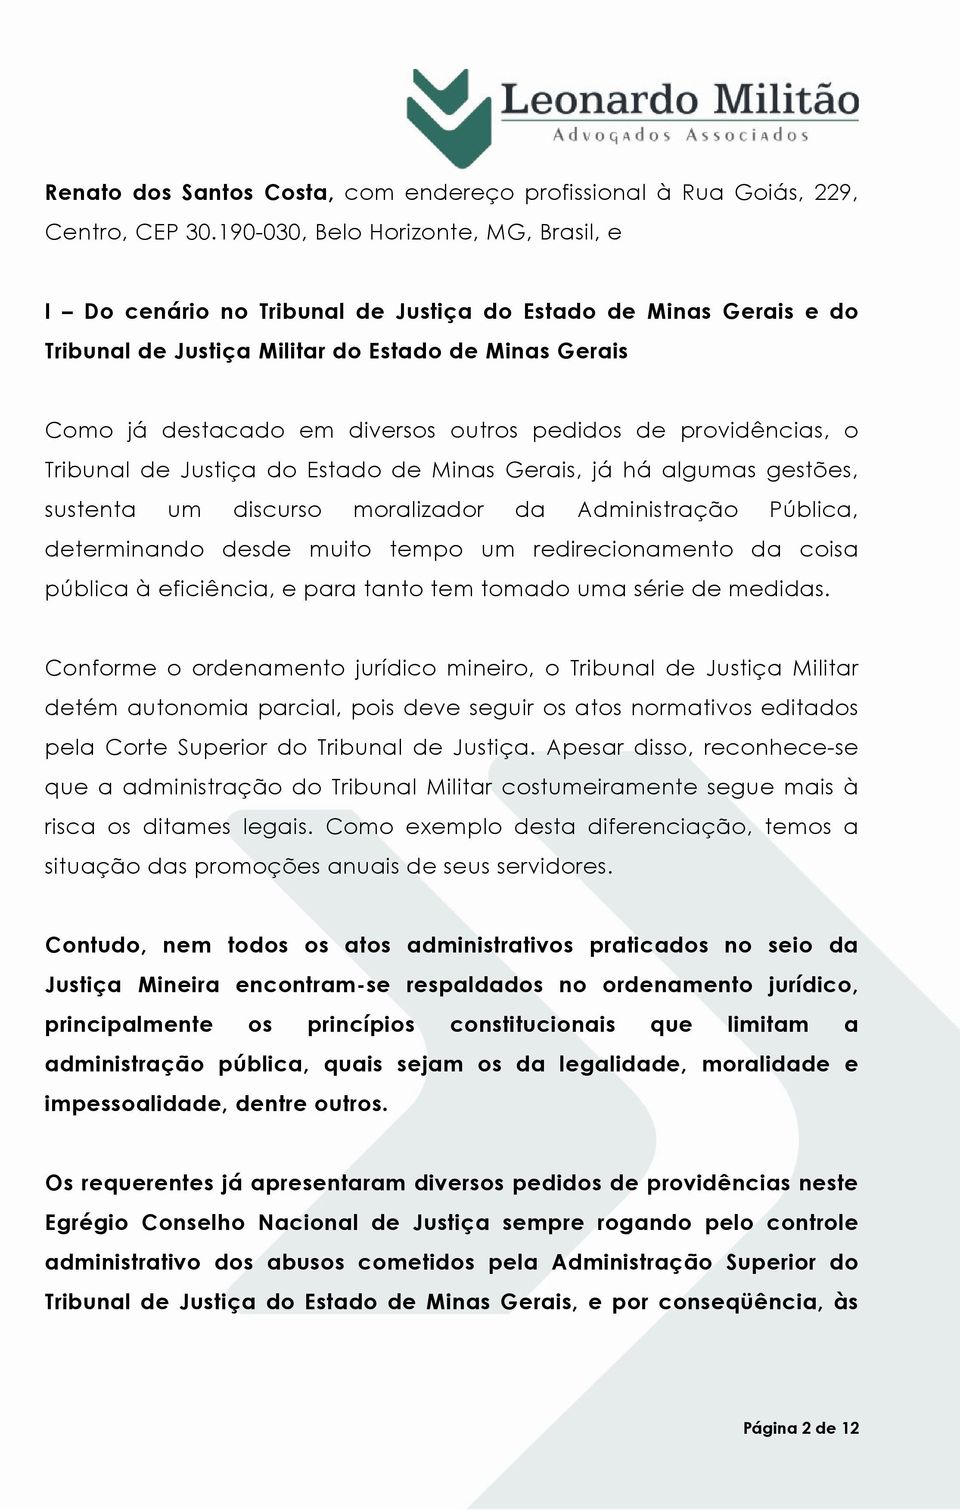 pedidos de providências, o Tribunal de Justiça do Estado de Minas Gerais, já há algumas gestões, sustenta um discurso moralizador da Administração Pública, determinando desde muito tempo um